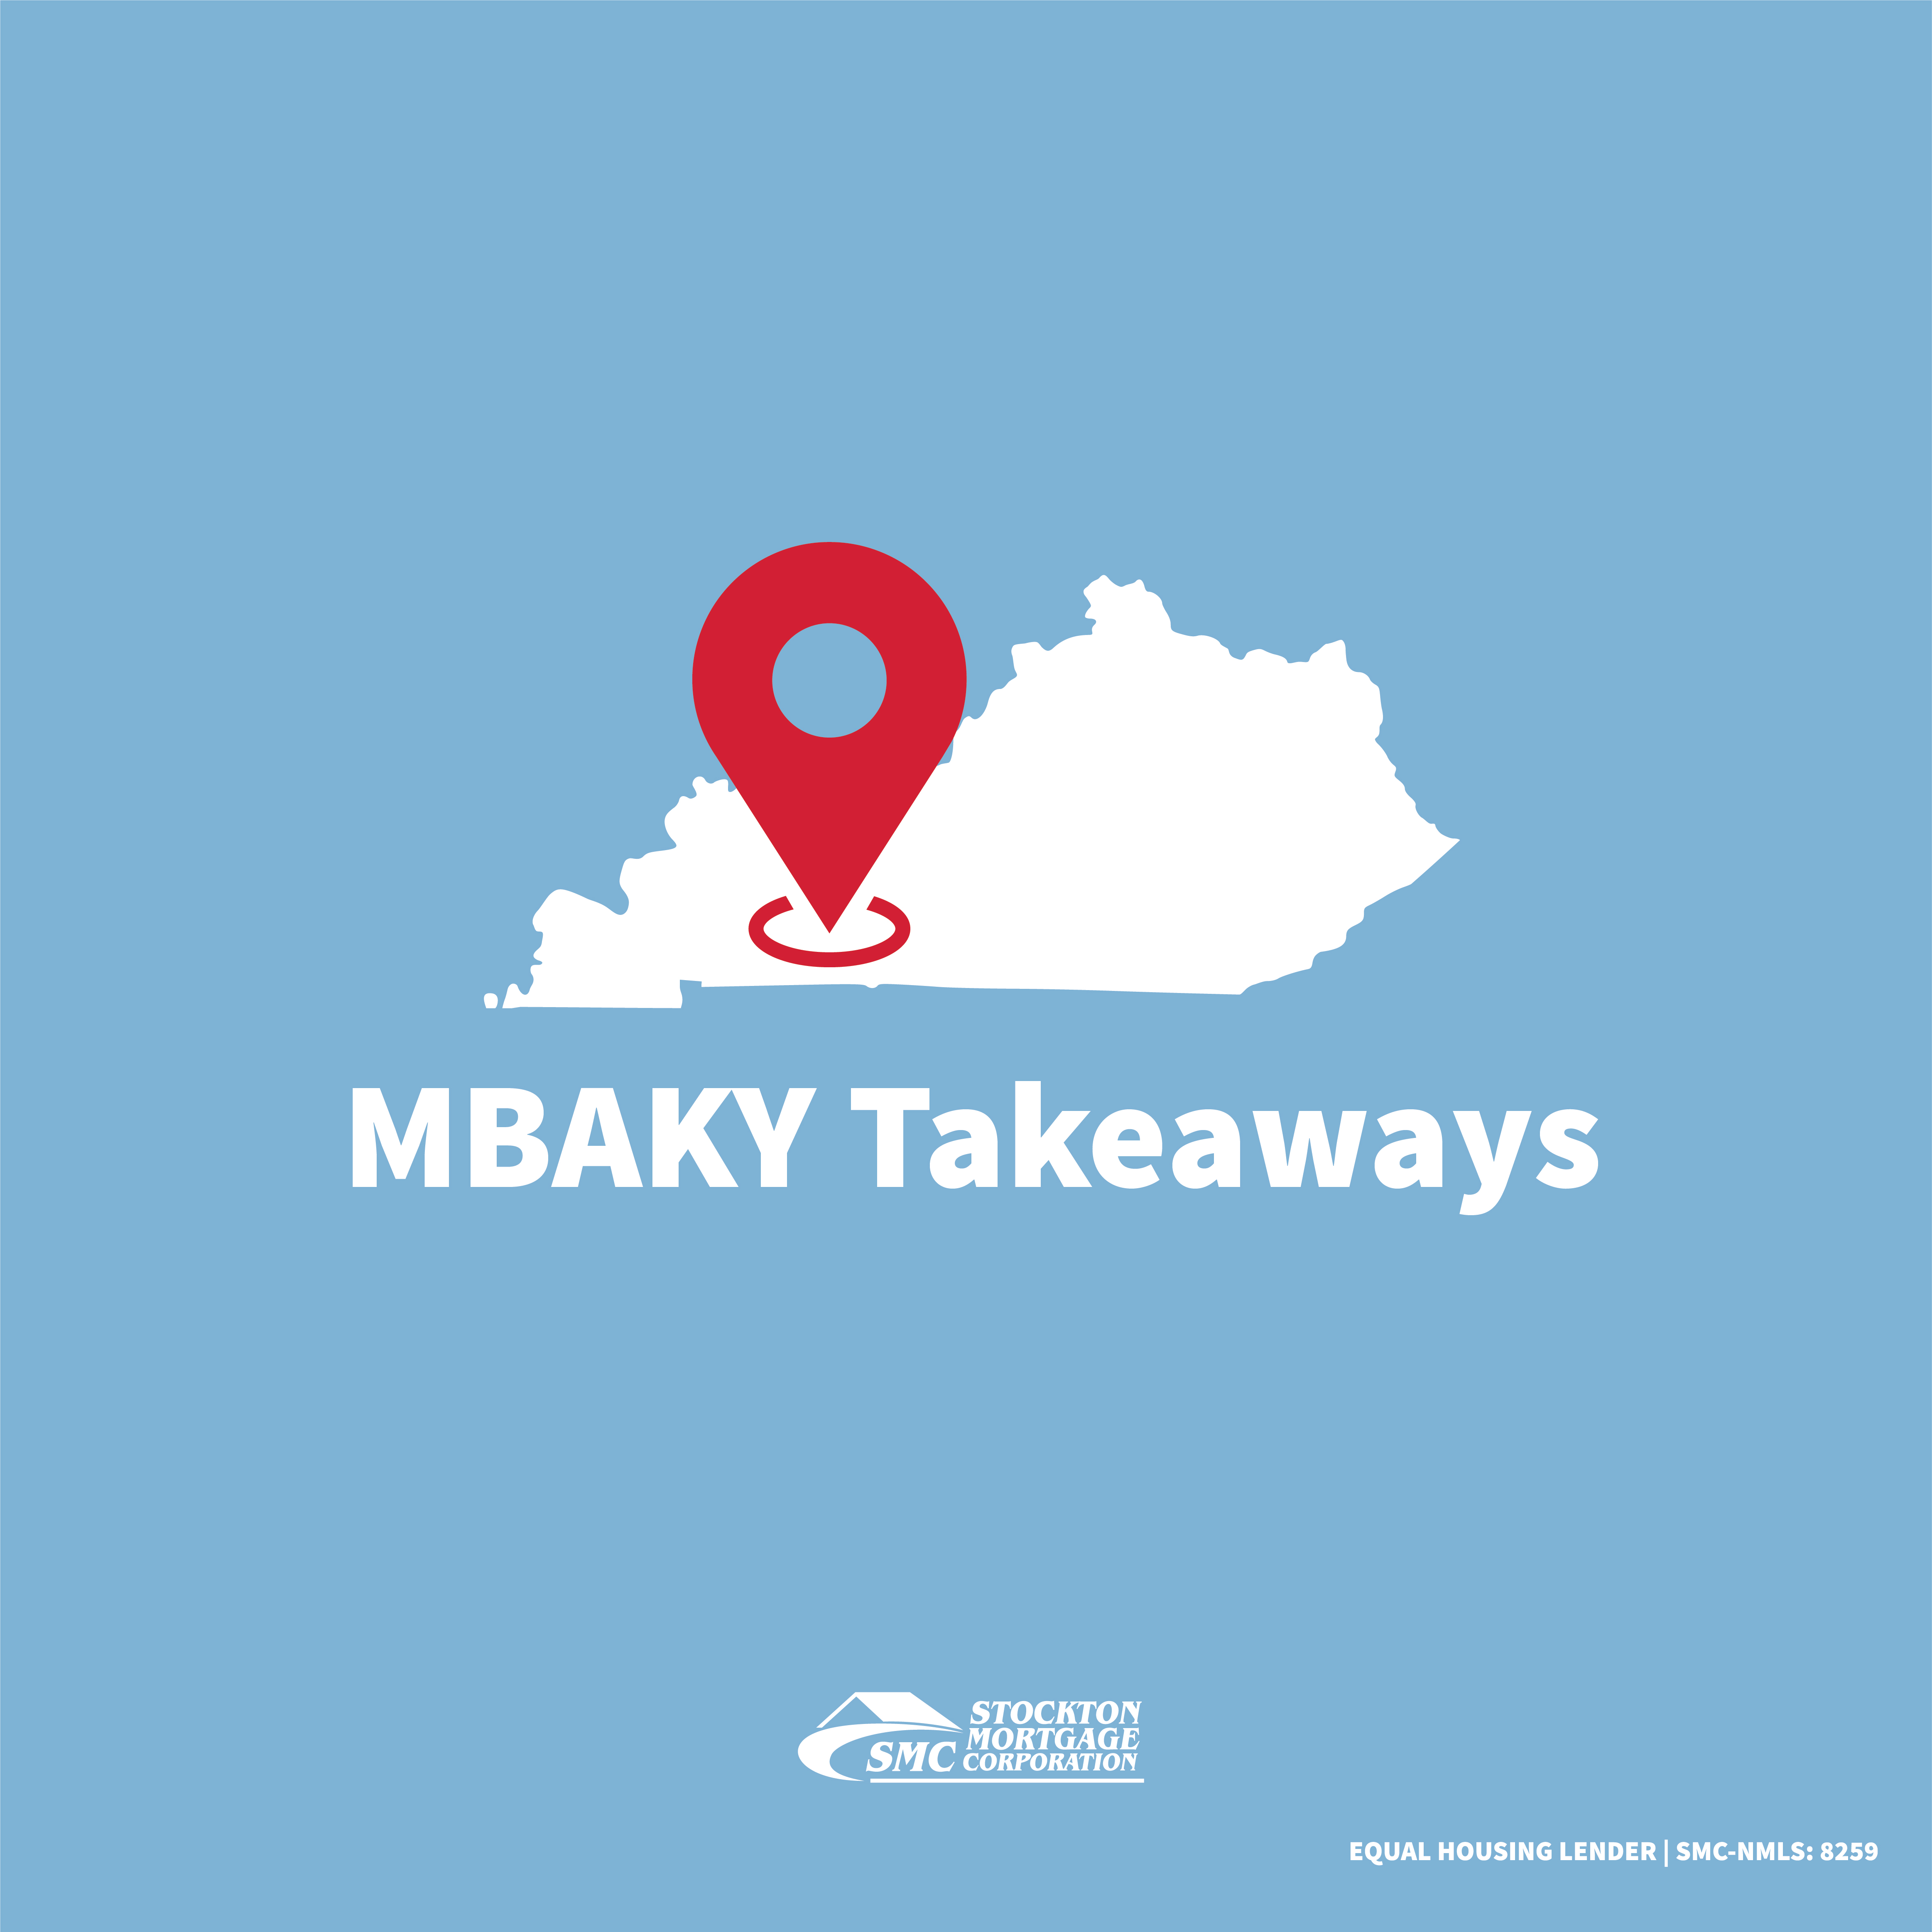 MBAKY Takeaways Blog